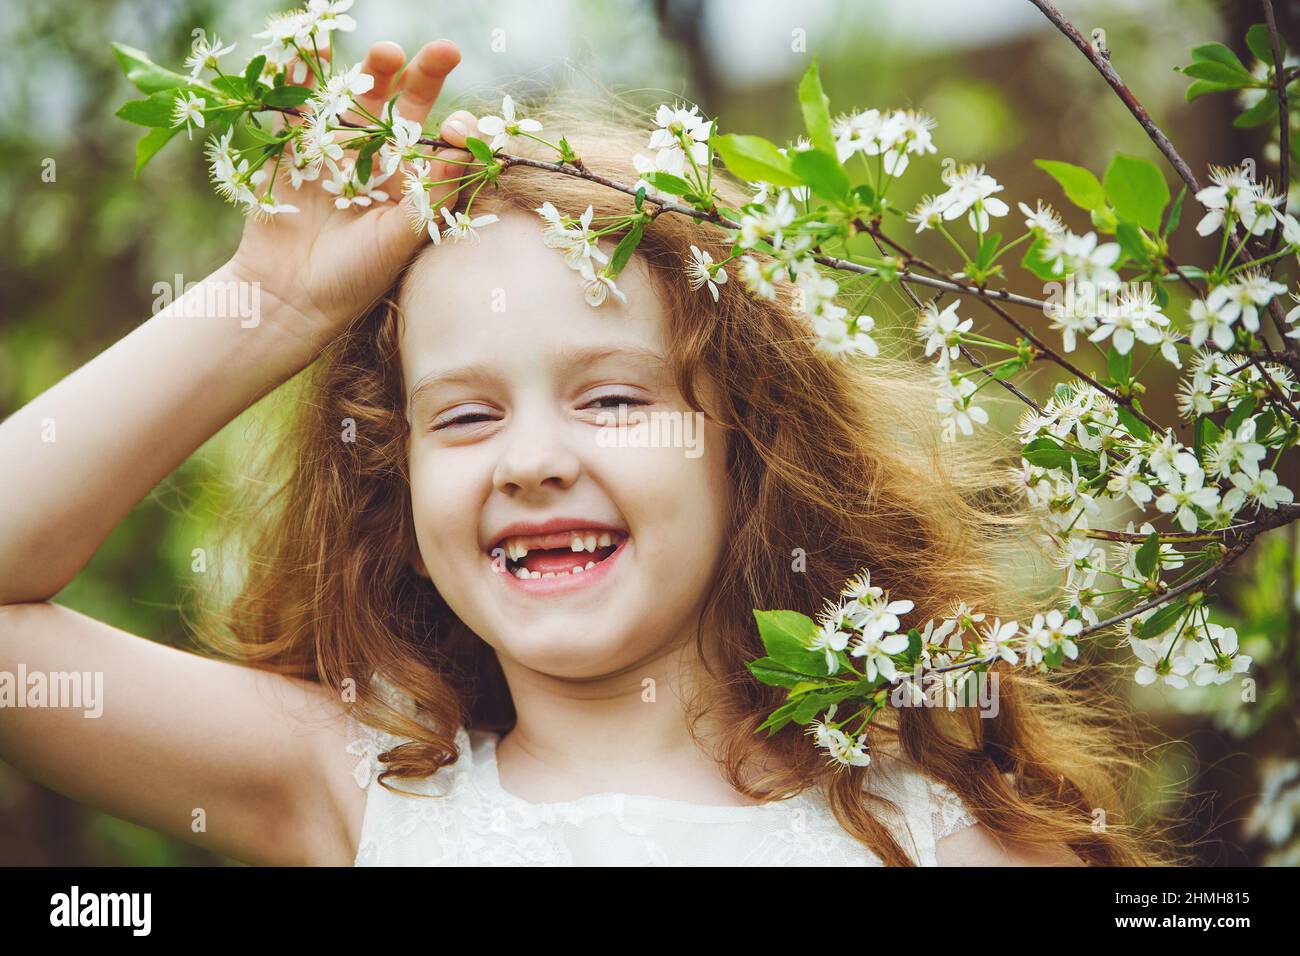 Ragazza senza denti ridente in abito bianco vicino a ciliegi in fiore. Sorriso felice e sano. Foto Stock